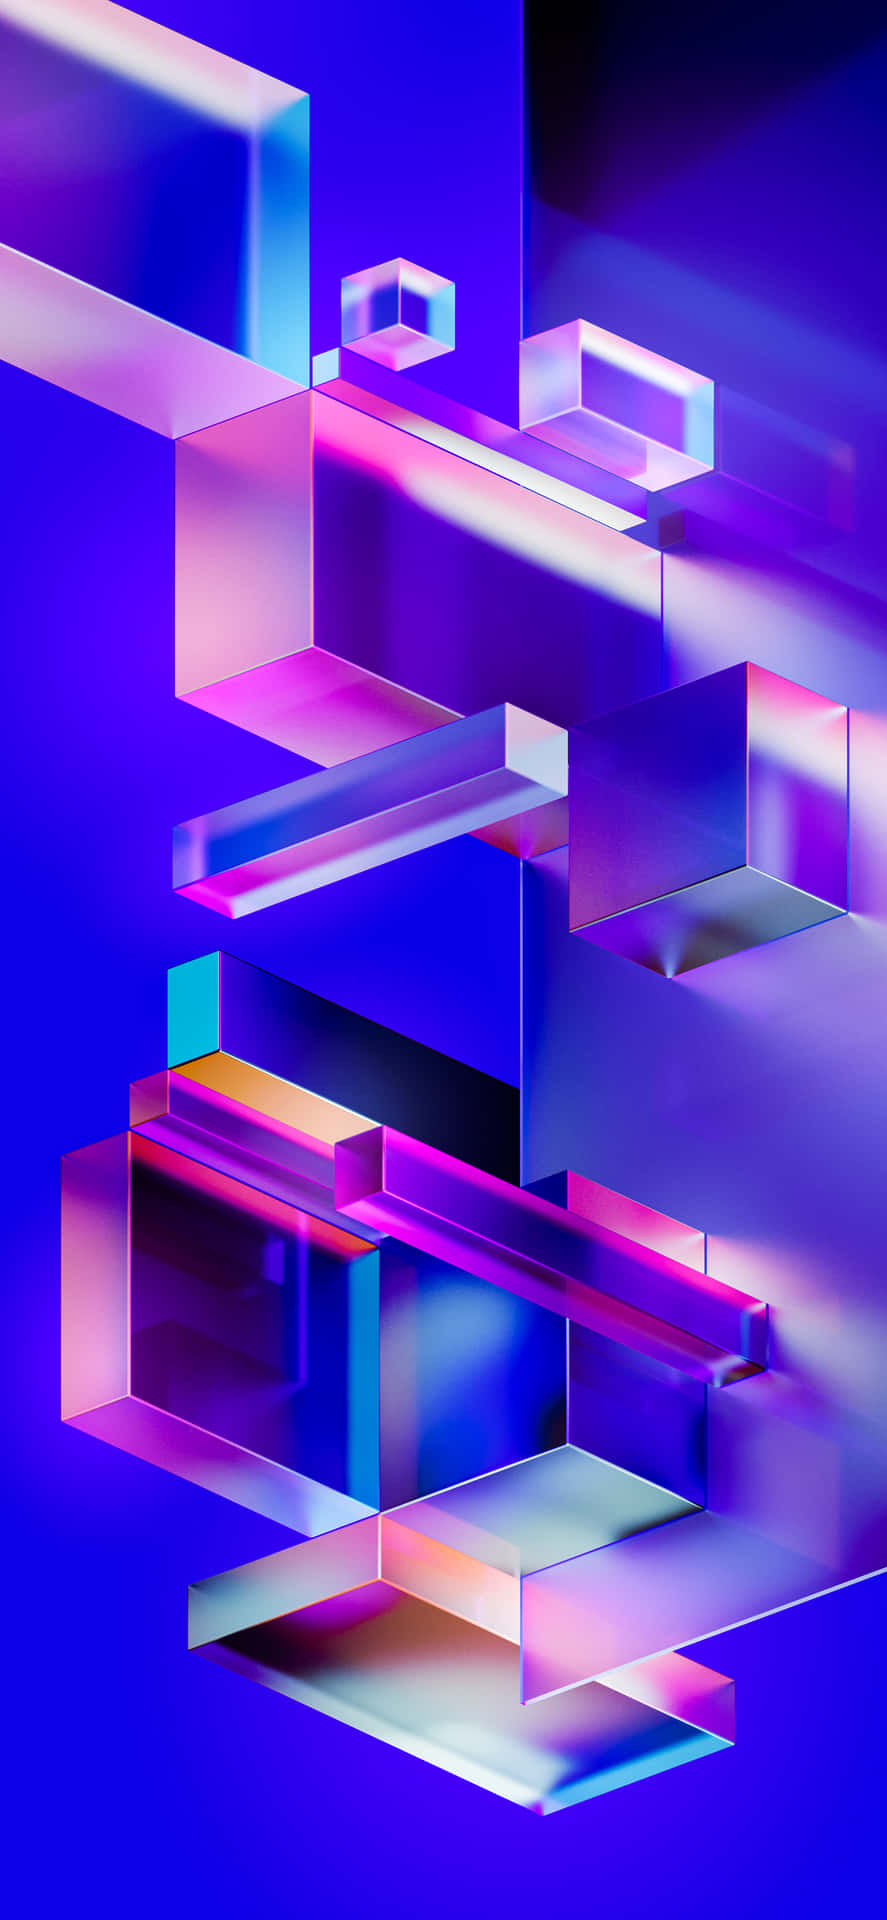 3D Geometric Abstract Art Wallpaper